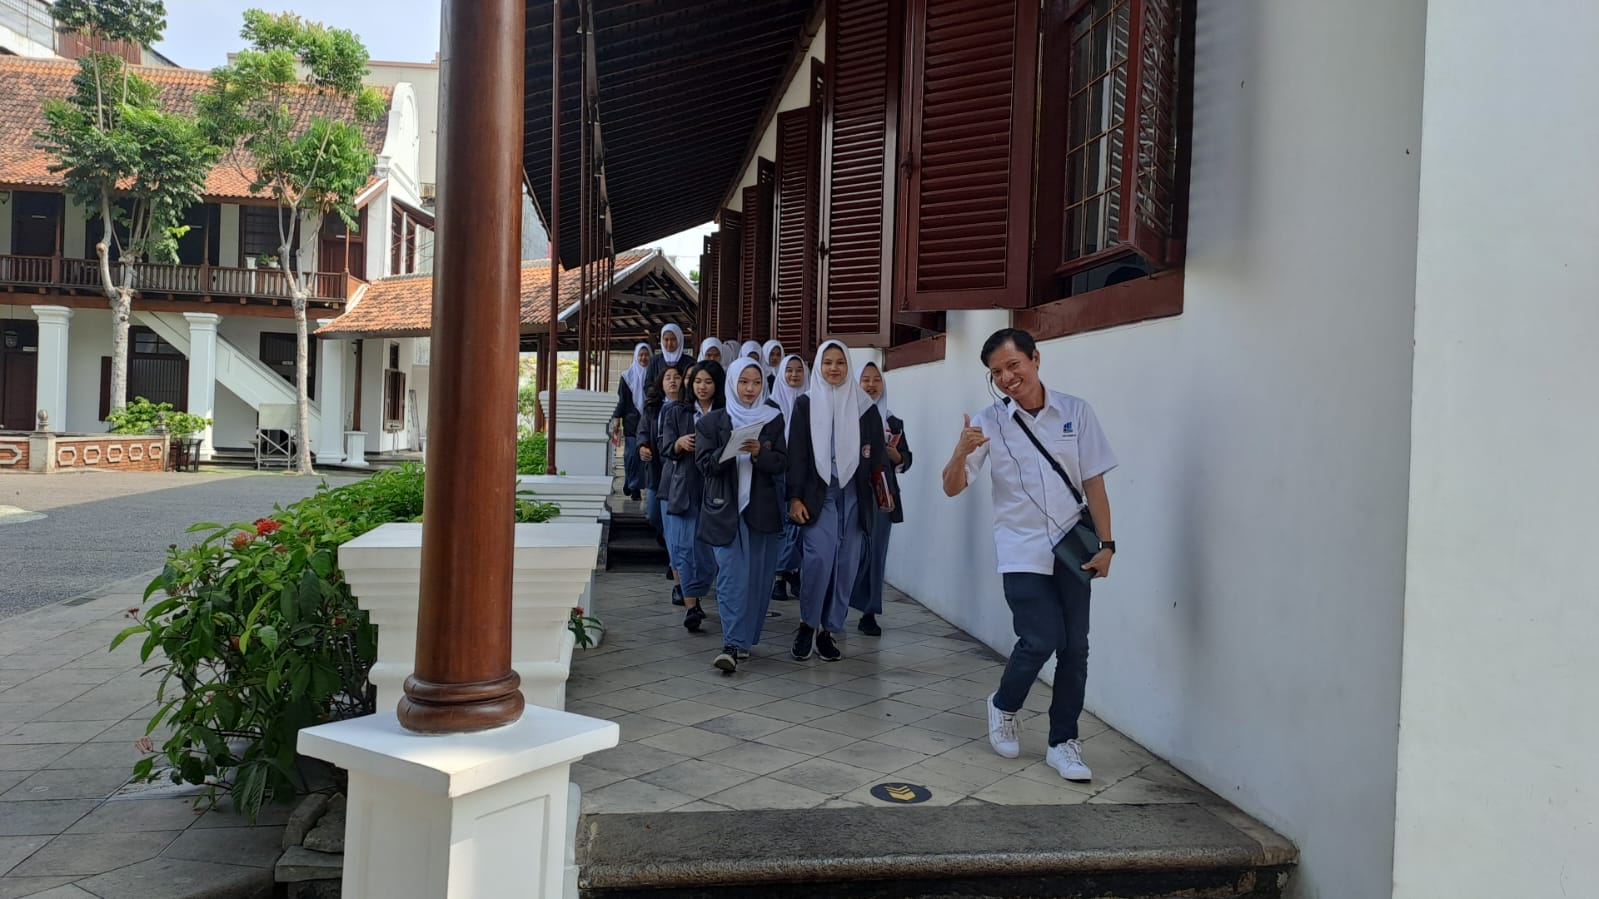 Giat Kunjungan Semangat dari SMK PGRI 1 Tangerang ke Pusdipres